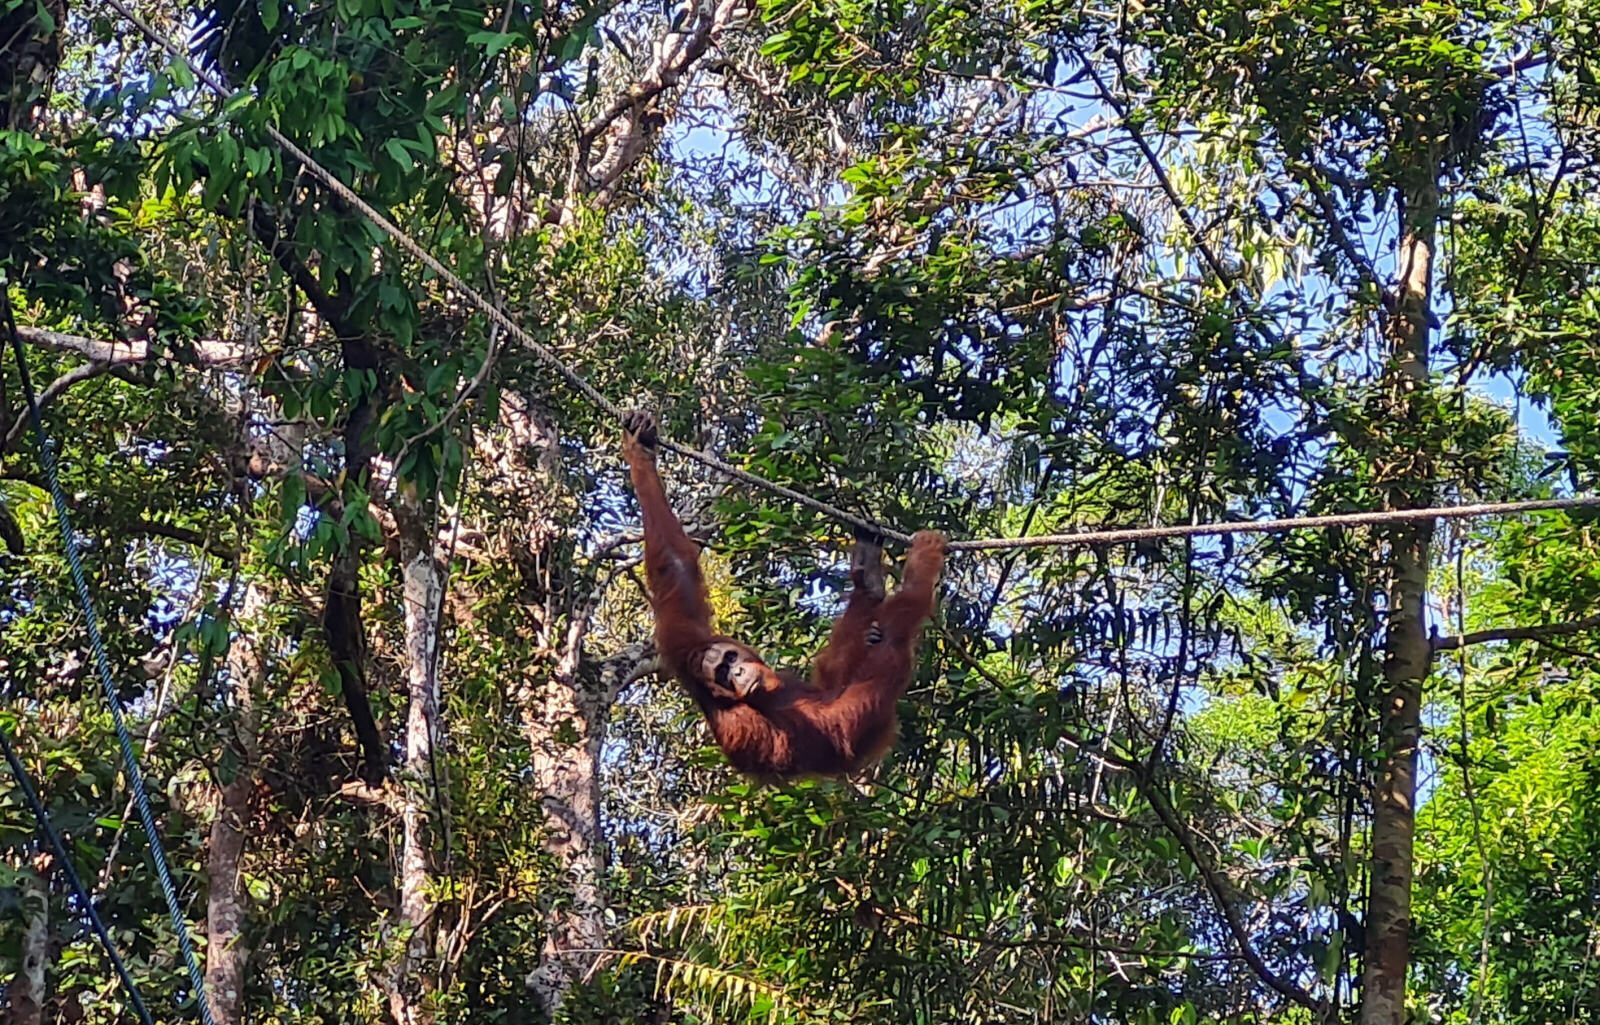 Orangutan at Semenggoh reserve near Kuching